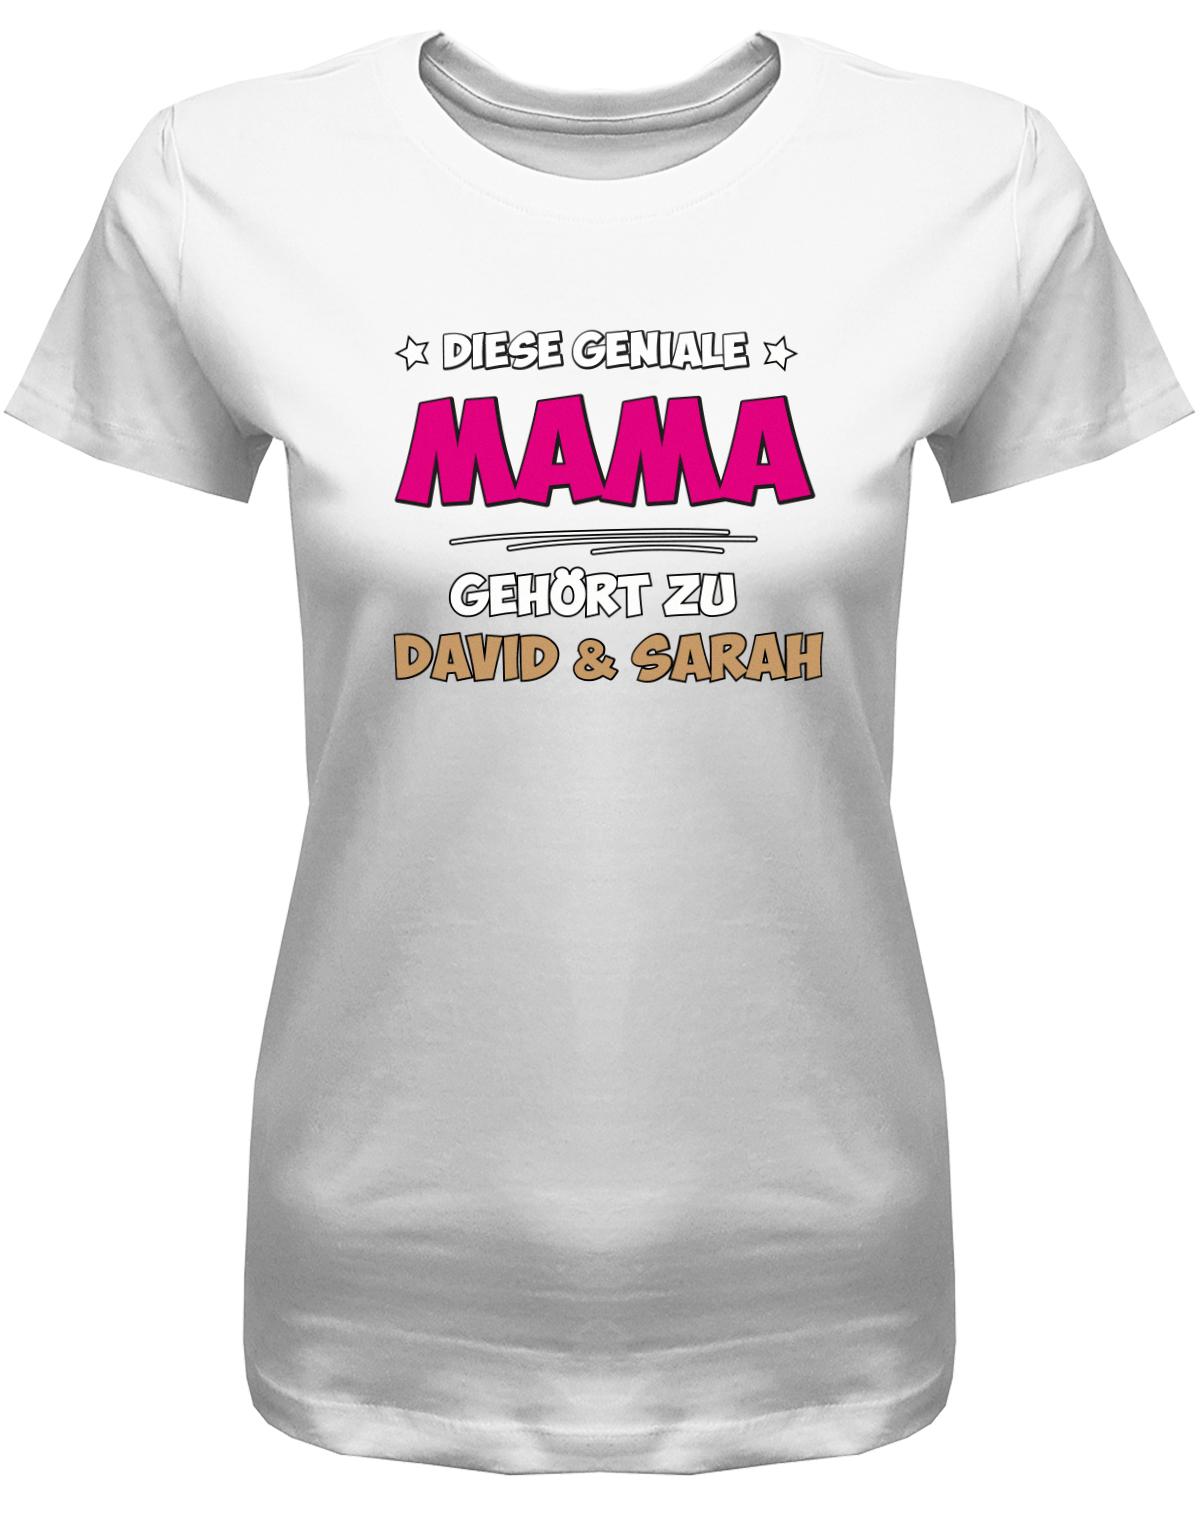 Diese-geniale-Mama-geh-rt-zu-Wunschnamen-Damen-Mama-Shirt-Weiss